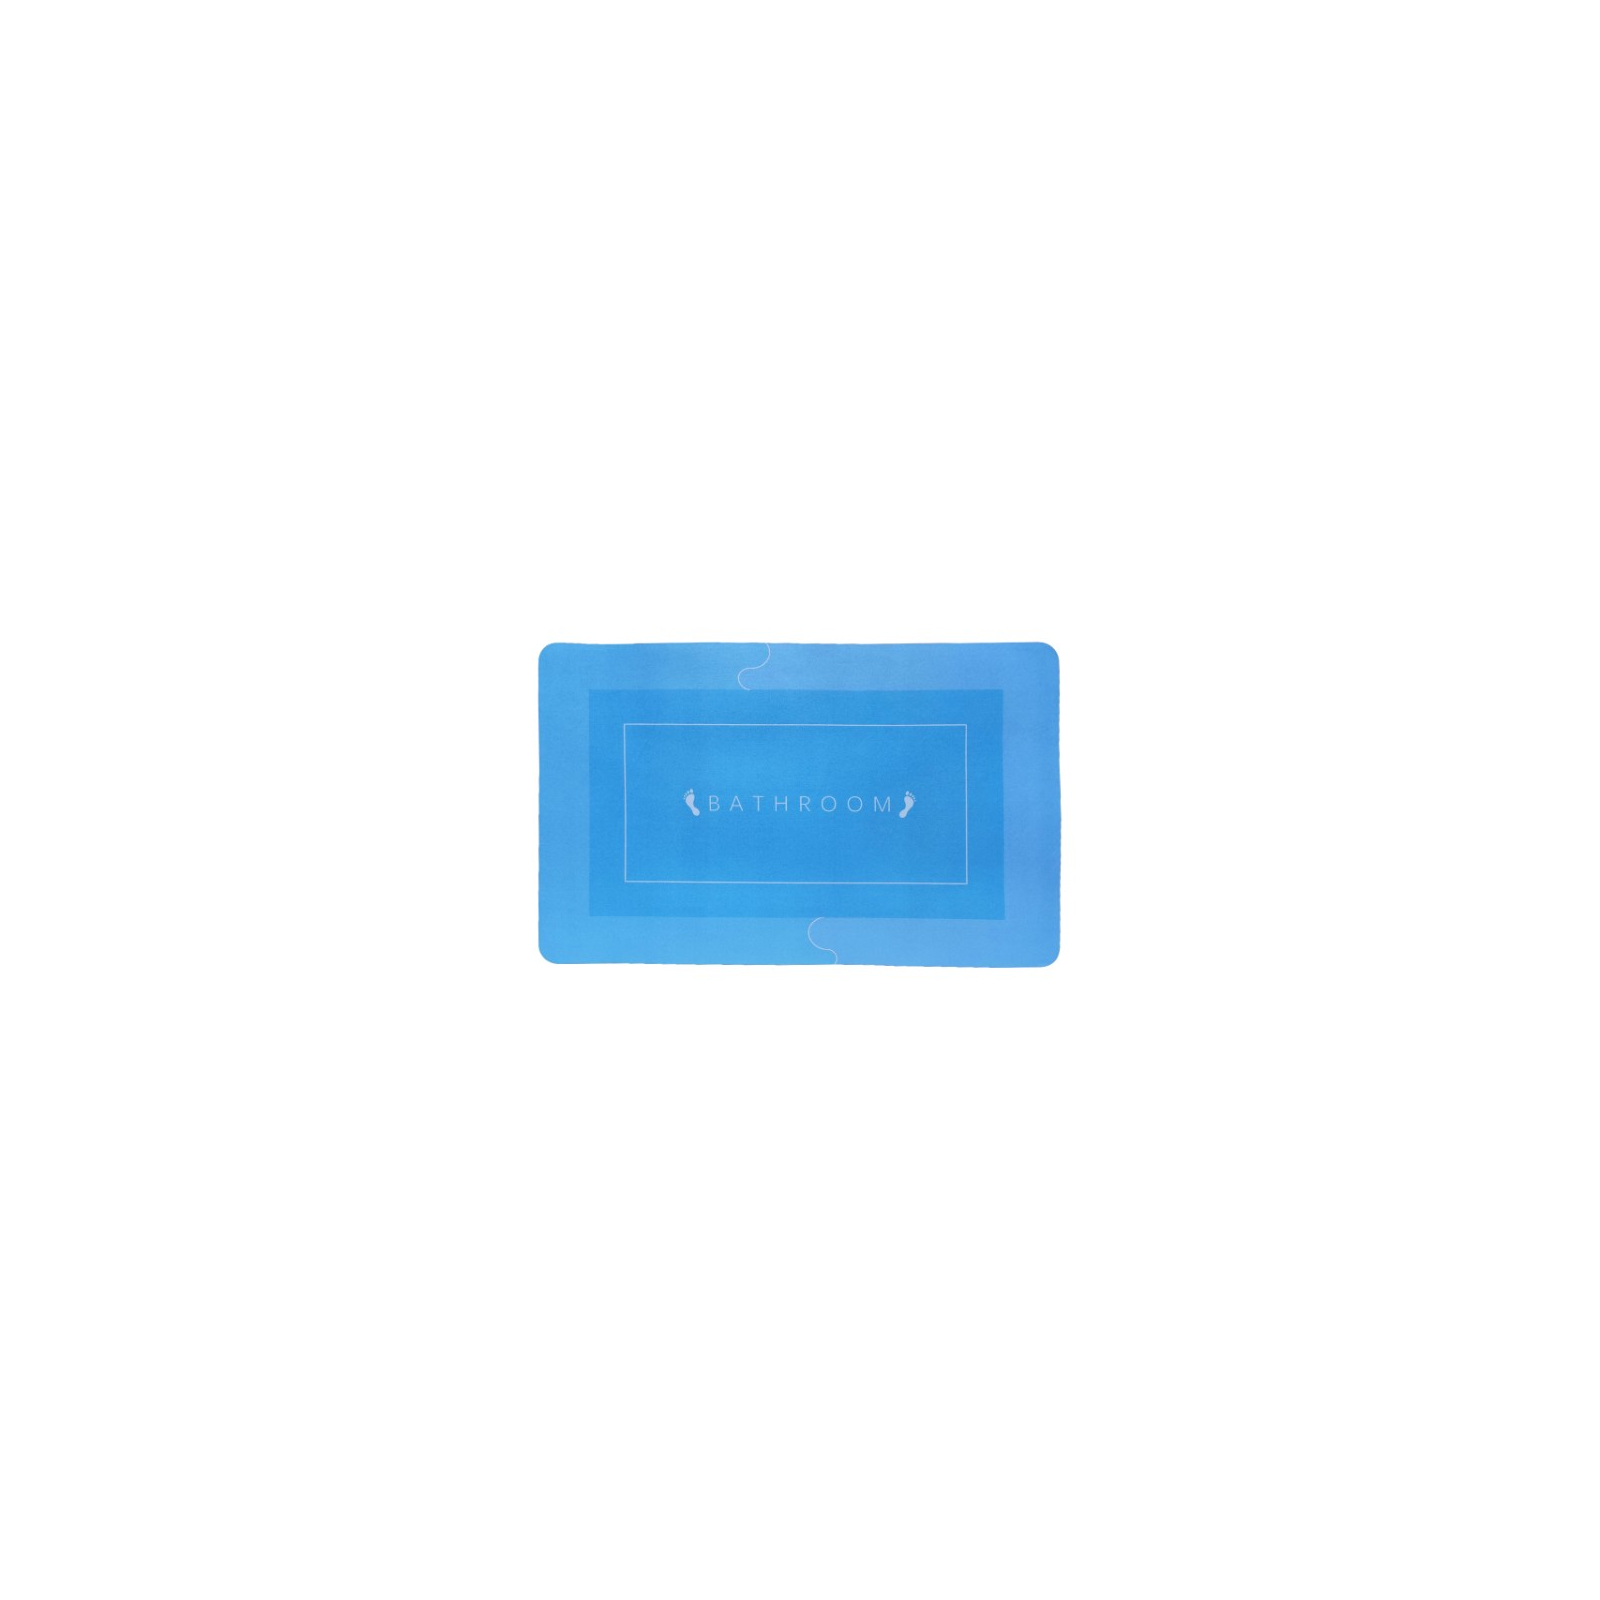 Коврик для ванной Stenson суперпоглощающий 40 х 60 см прямоугольный светло-голубой (R30937 l.blue)